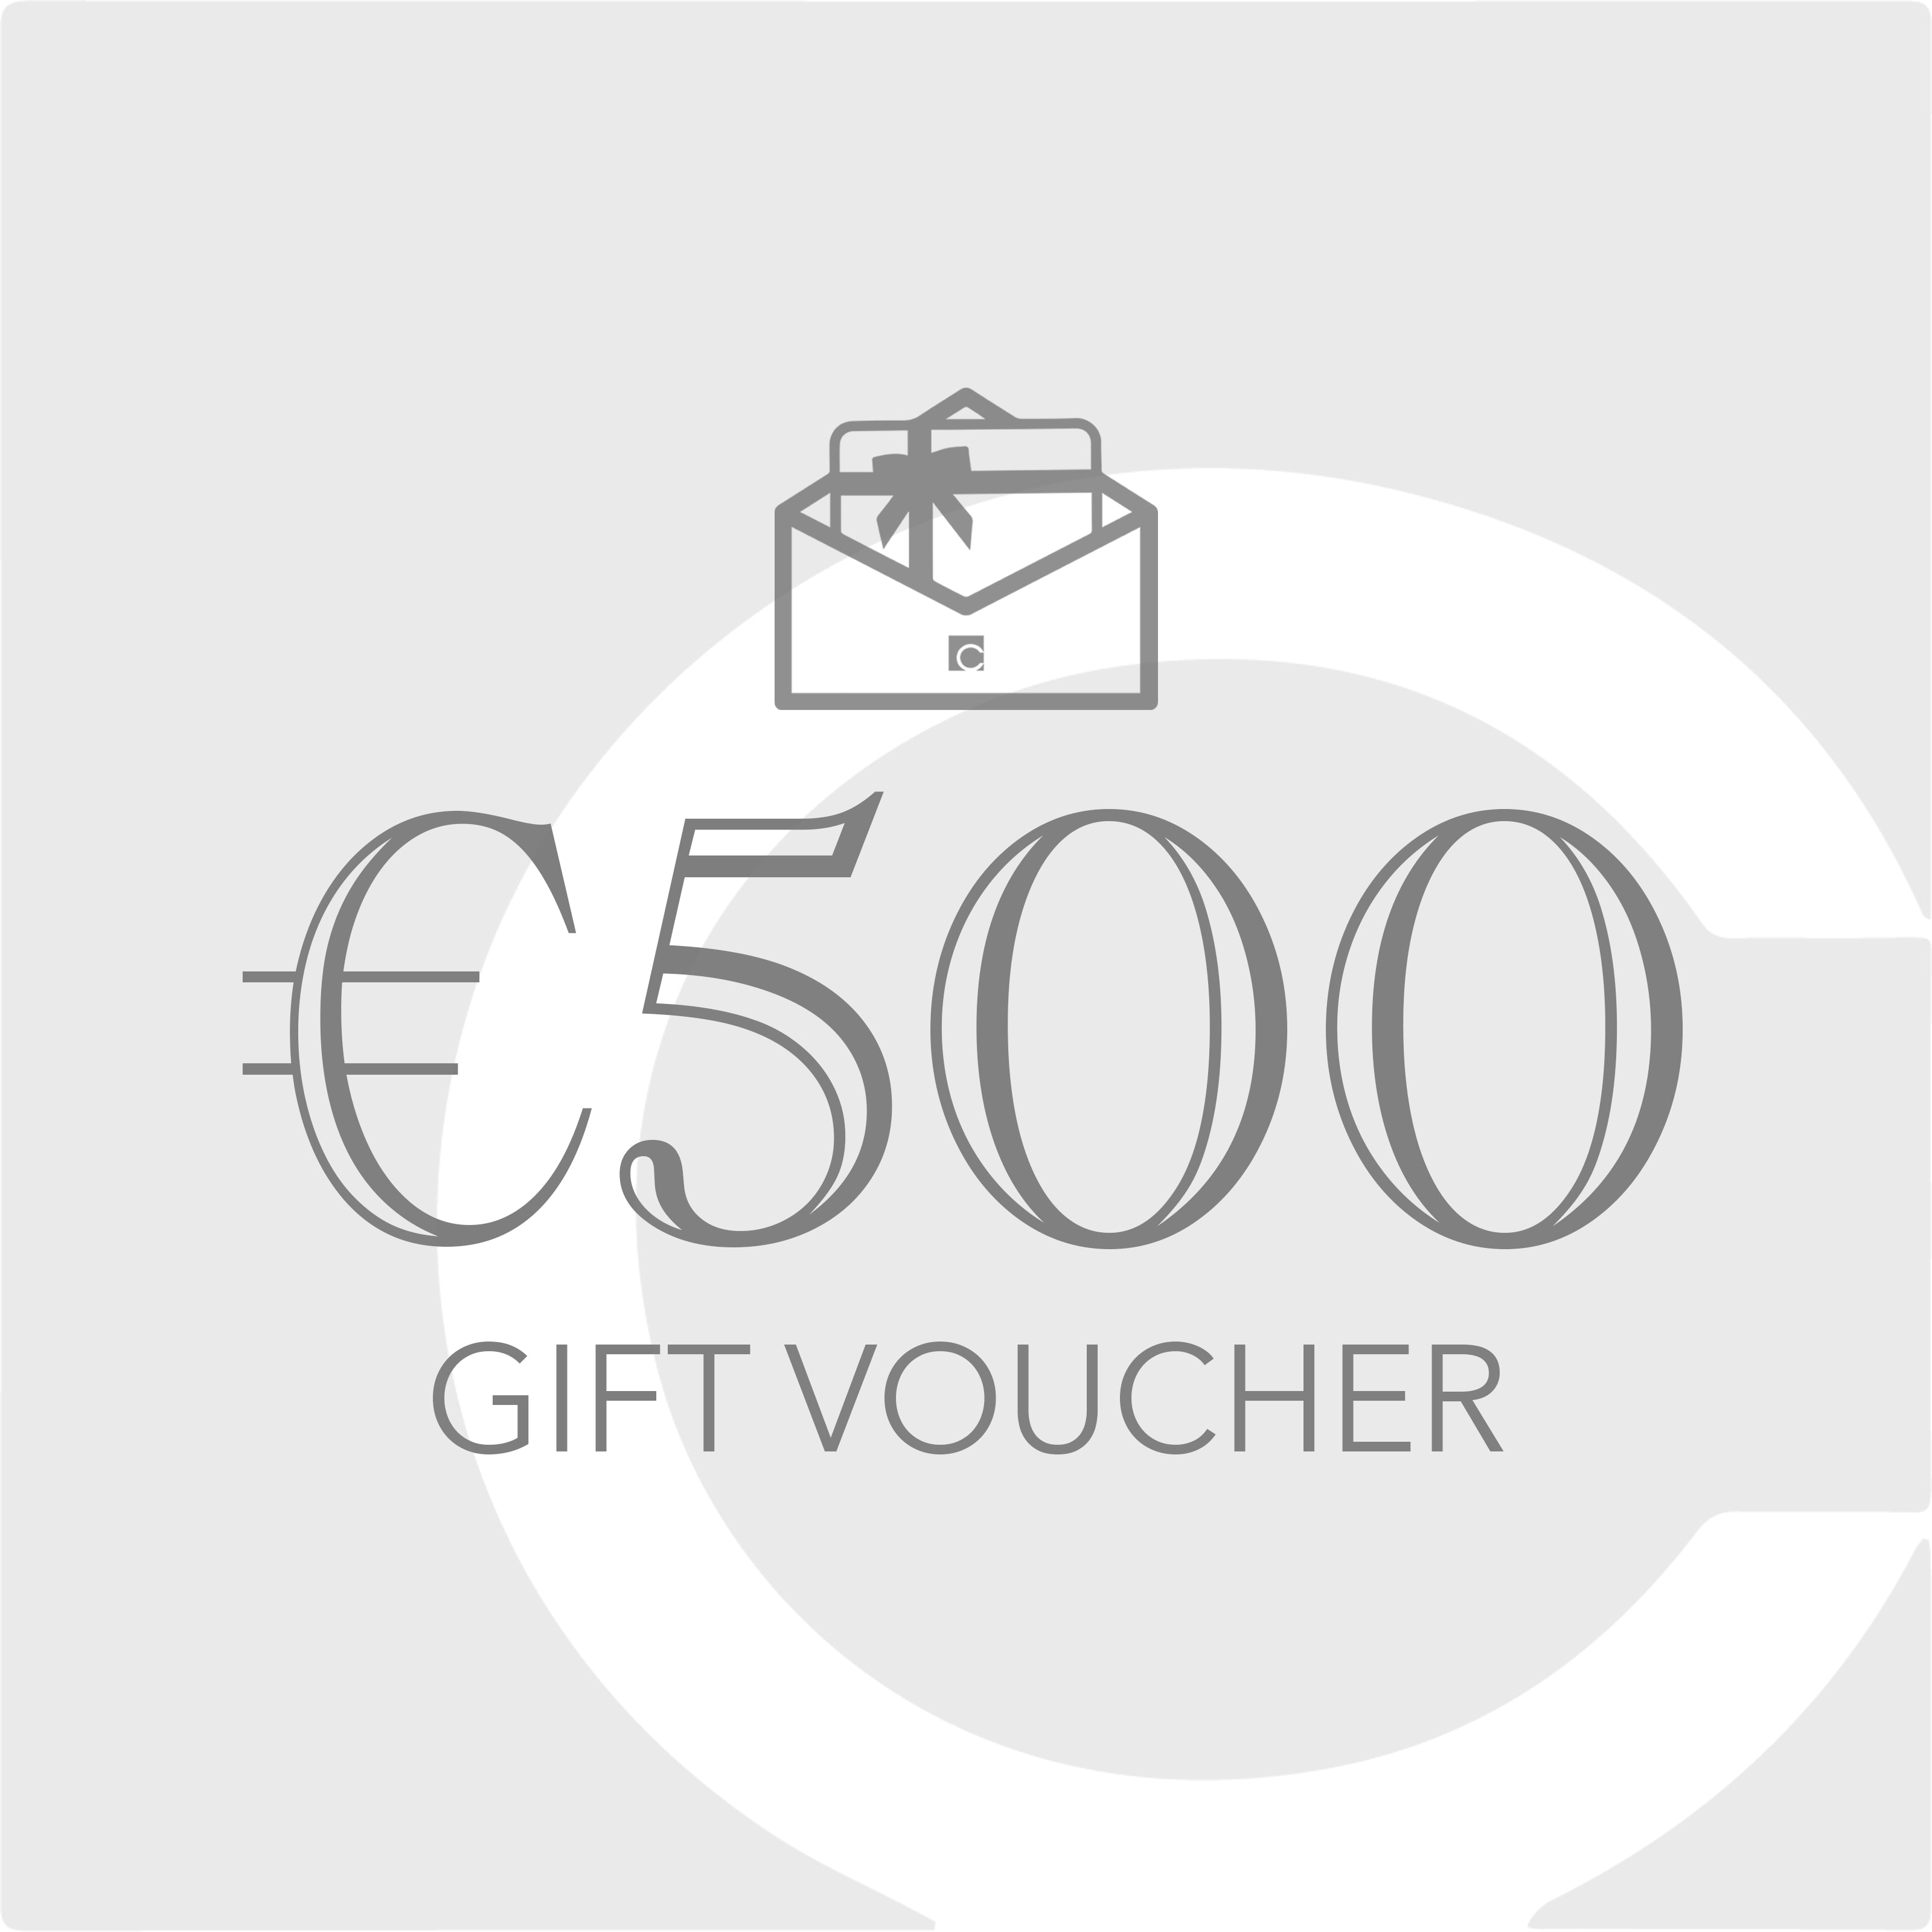 €500 Gift Voucher